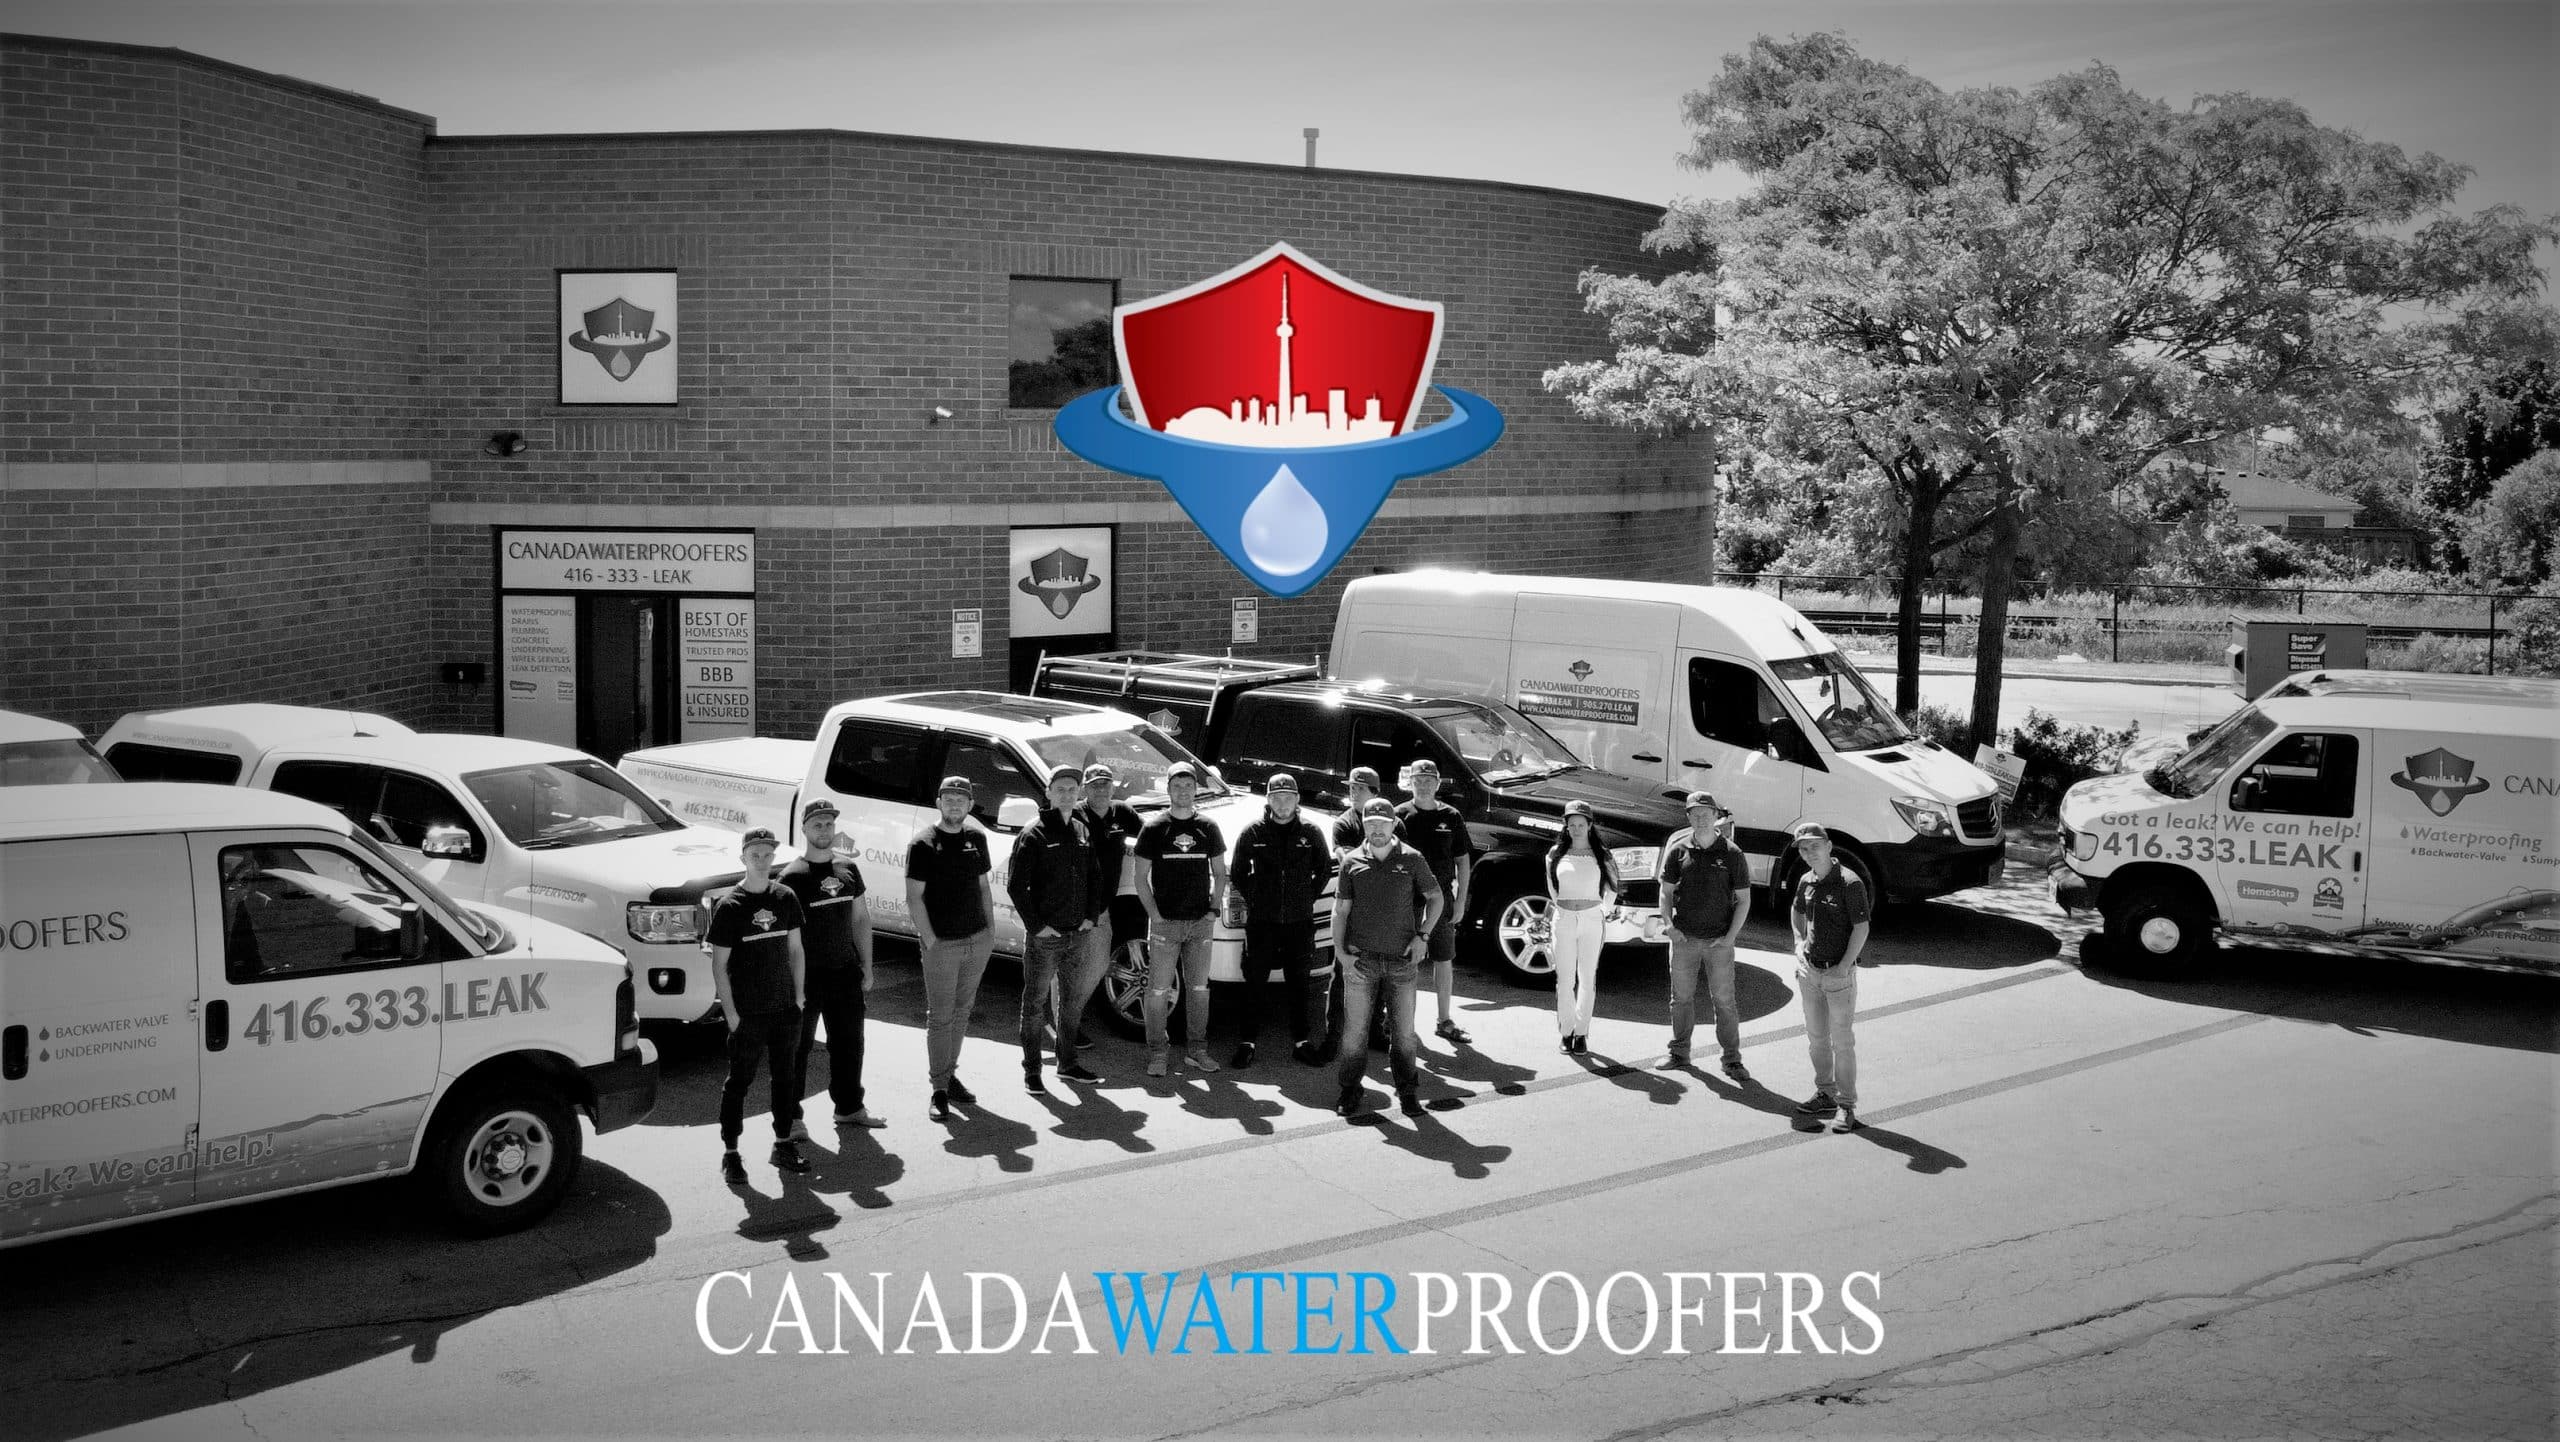 CANADA WATERPROOFERS BASEMENT WATERPROOFING TORONTO, PLUMBING AND DRAIN SERVICES